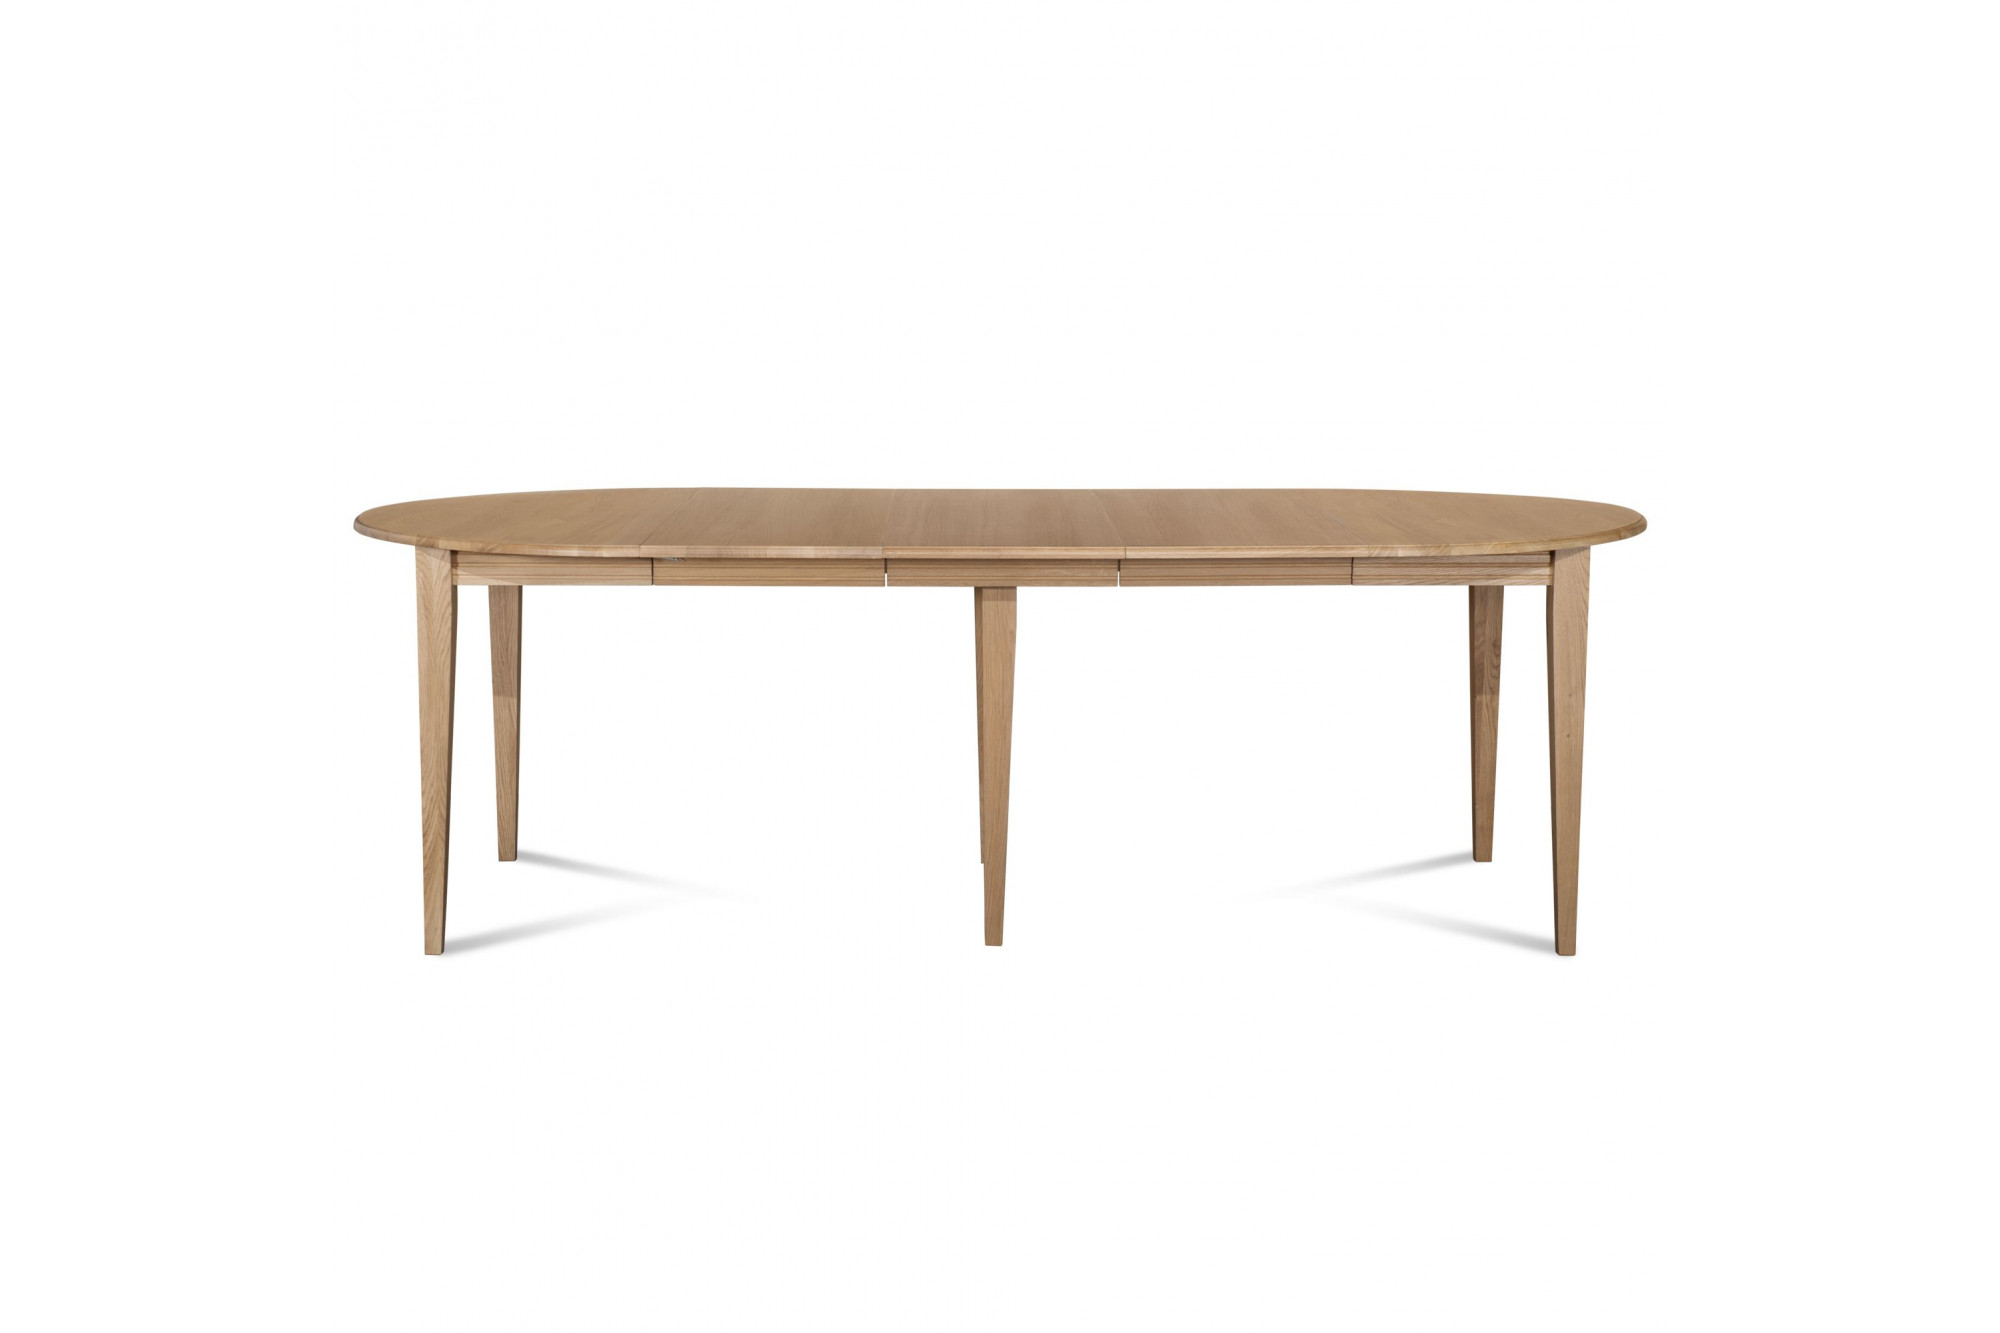 Table ronde 6 pieds fuseau 115 cm + 3 rallonges bois